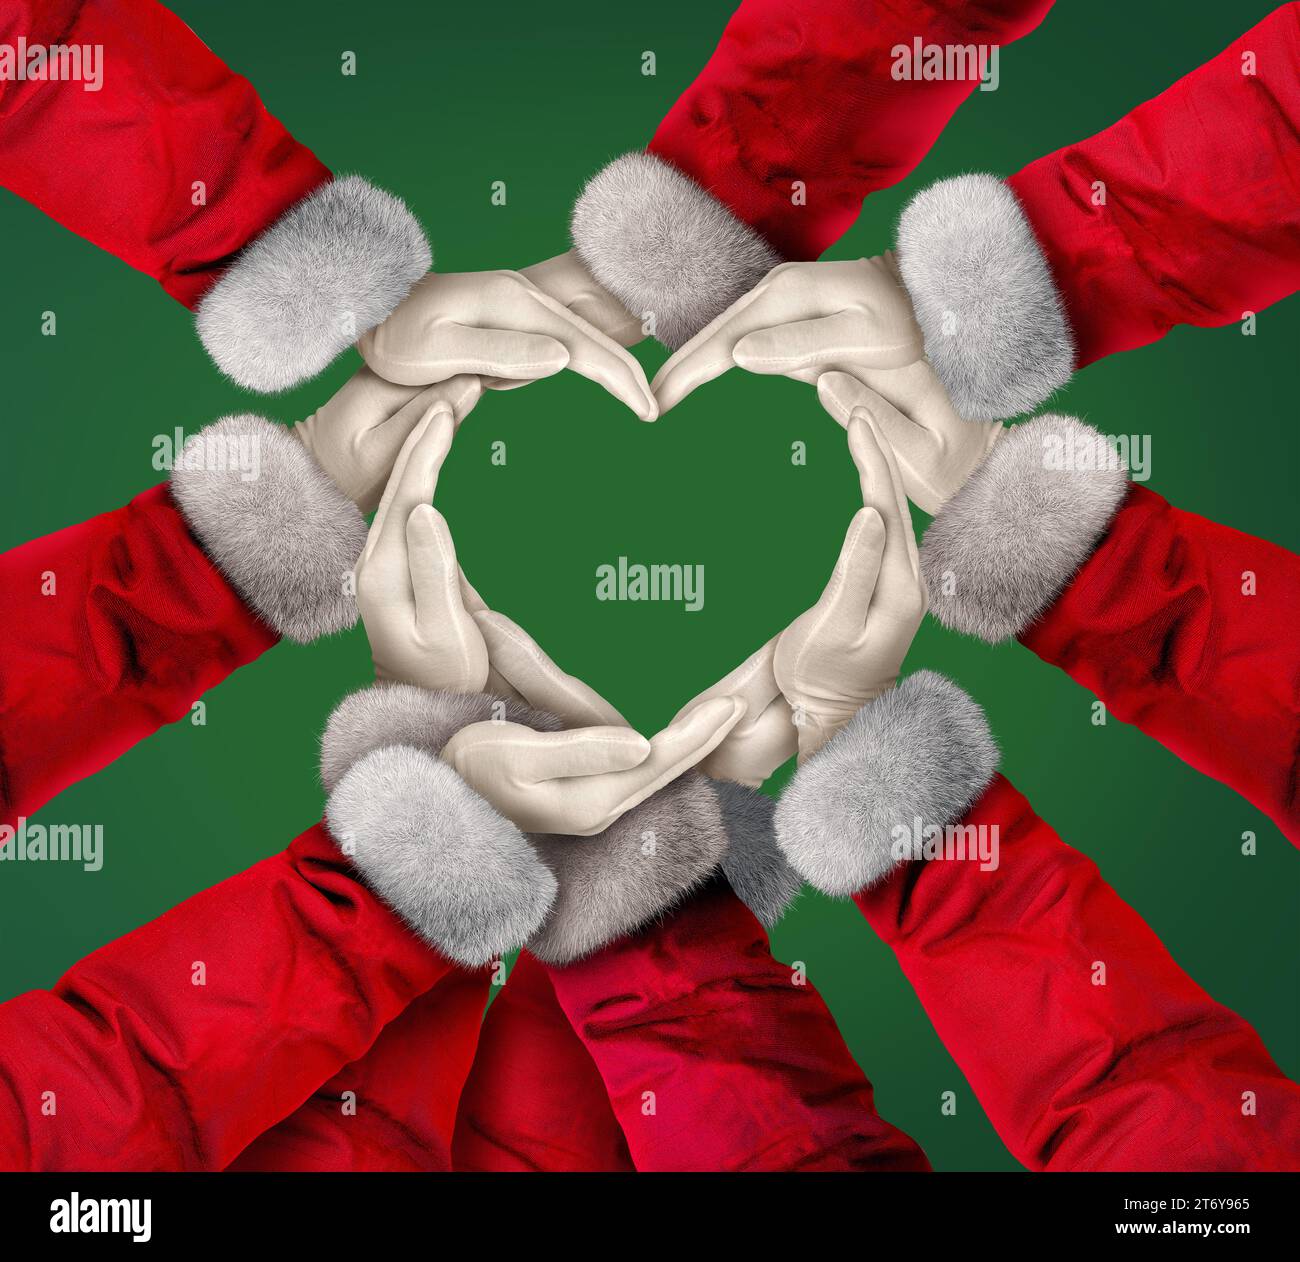 Vacanze di Natale amore e unità della comunità come un gruppo di mani e braccia di Babbo Natale che si uniscono insieme nello spirito della stagione del dono Foto Stock